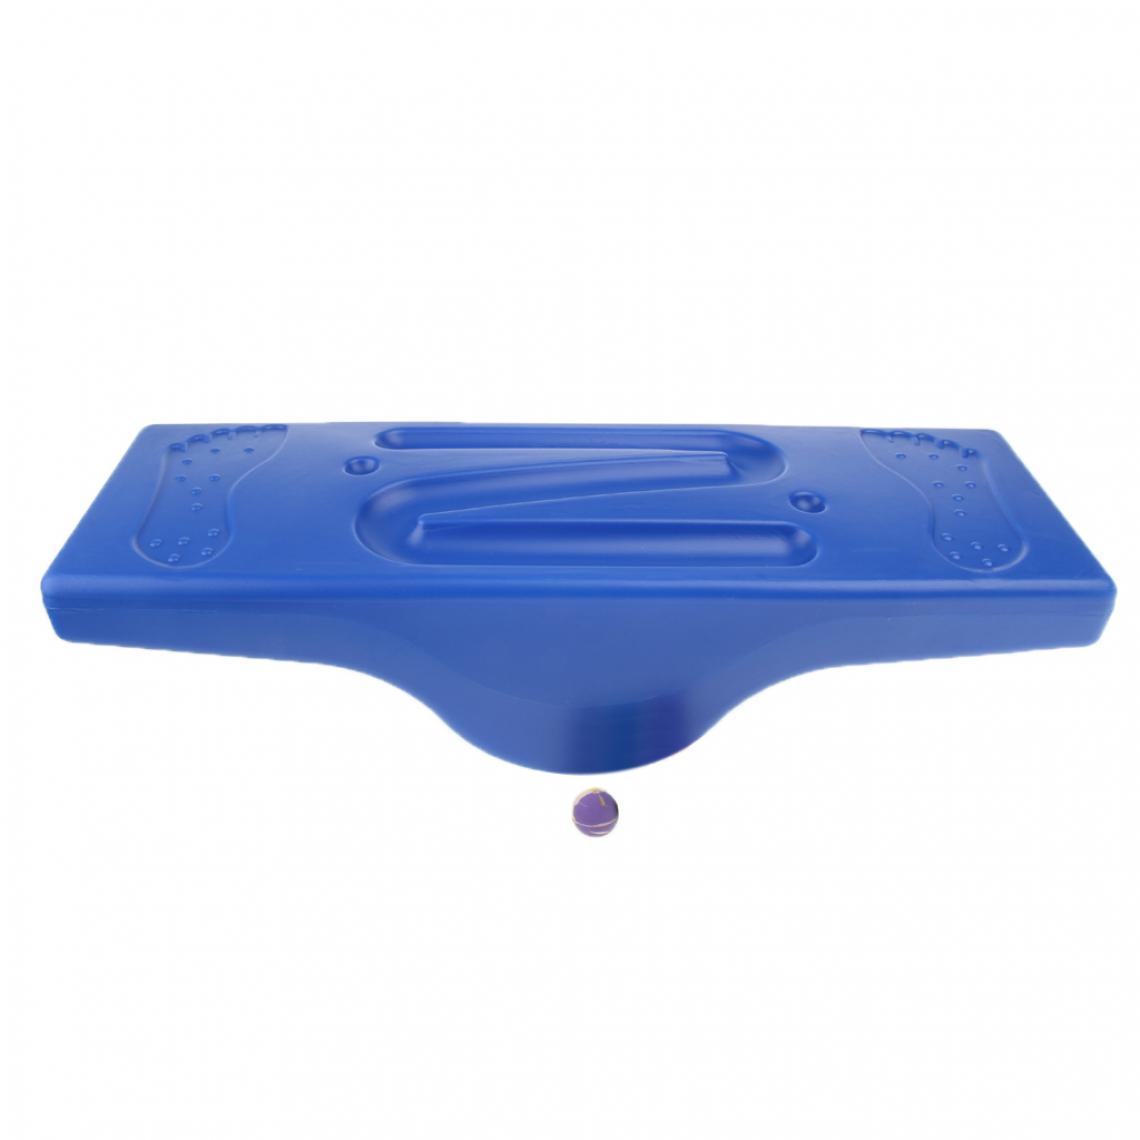 marque generique - enfants balance board ball labyrinthe balance formateur jouet actif jeu bleu - Autre appareil de mesure